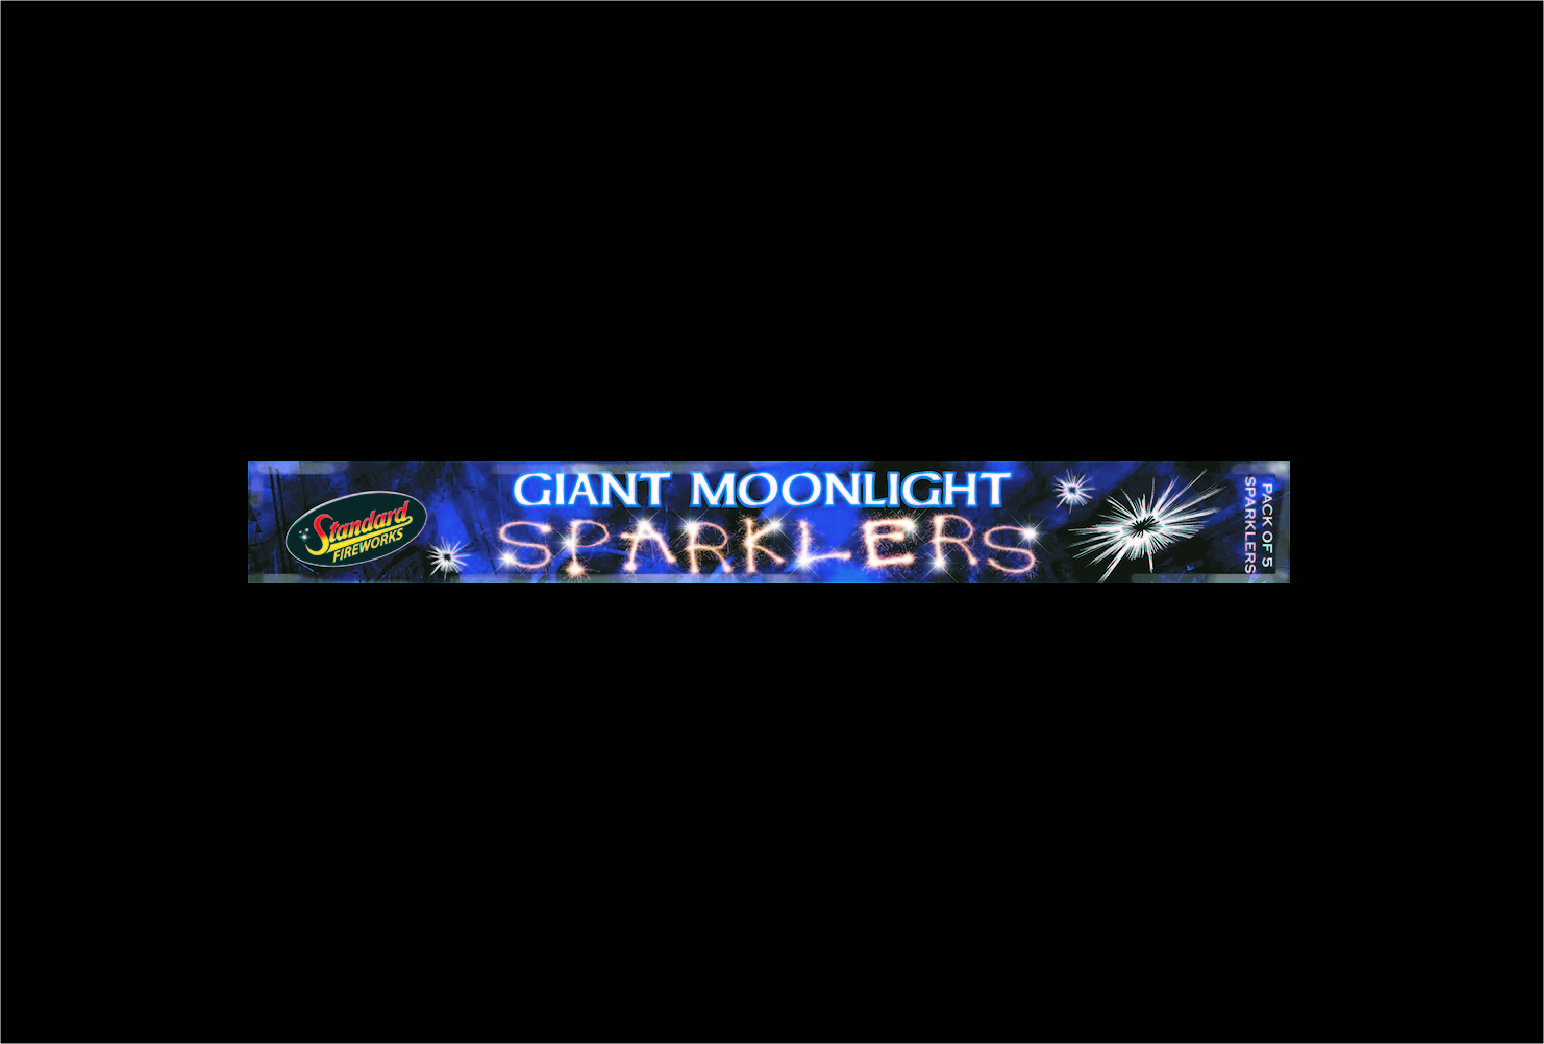 Giant Moonlight Sparklers